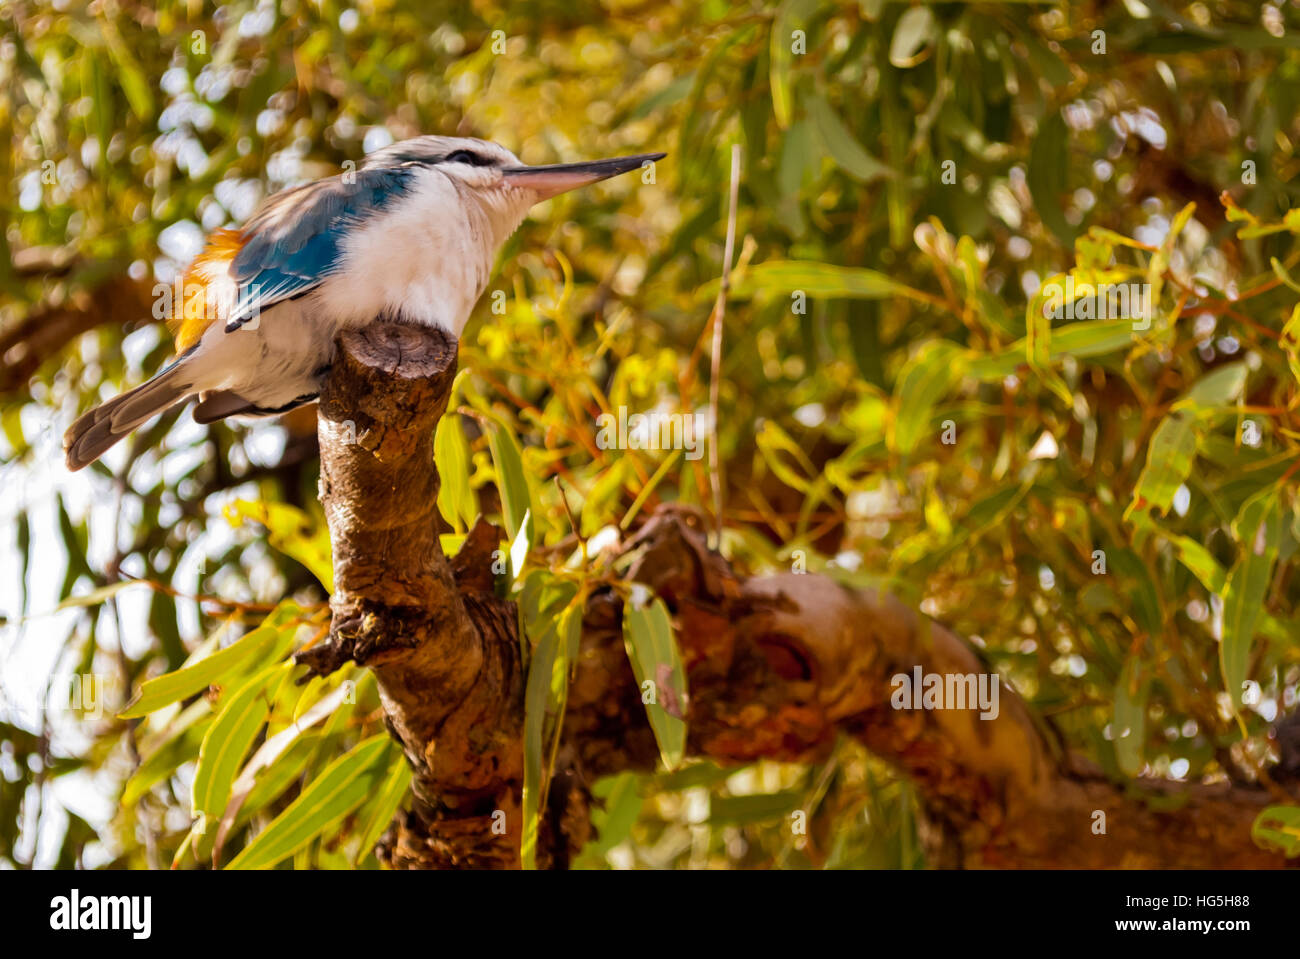 Australian Kookaburra bird standing on a tree Stock Photo